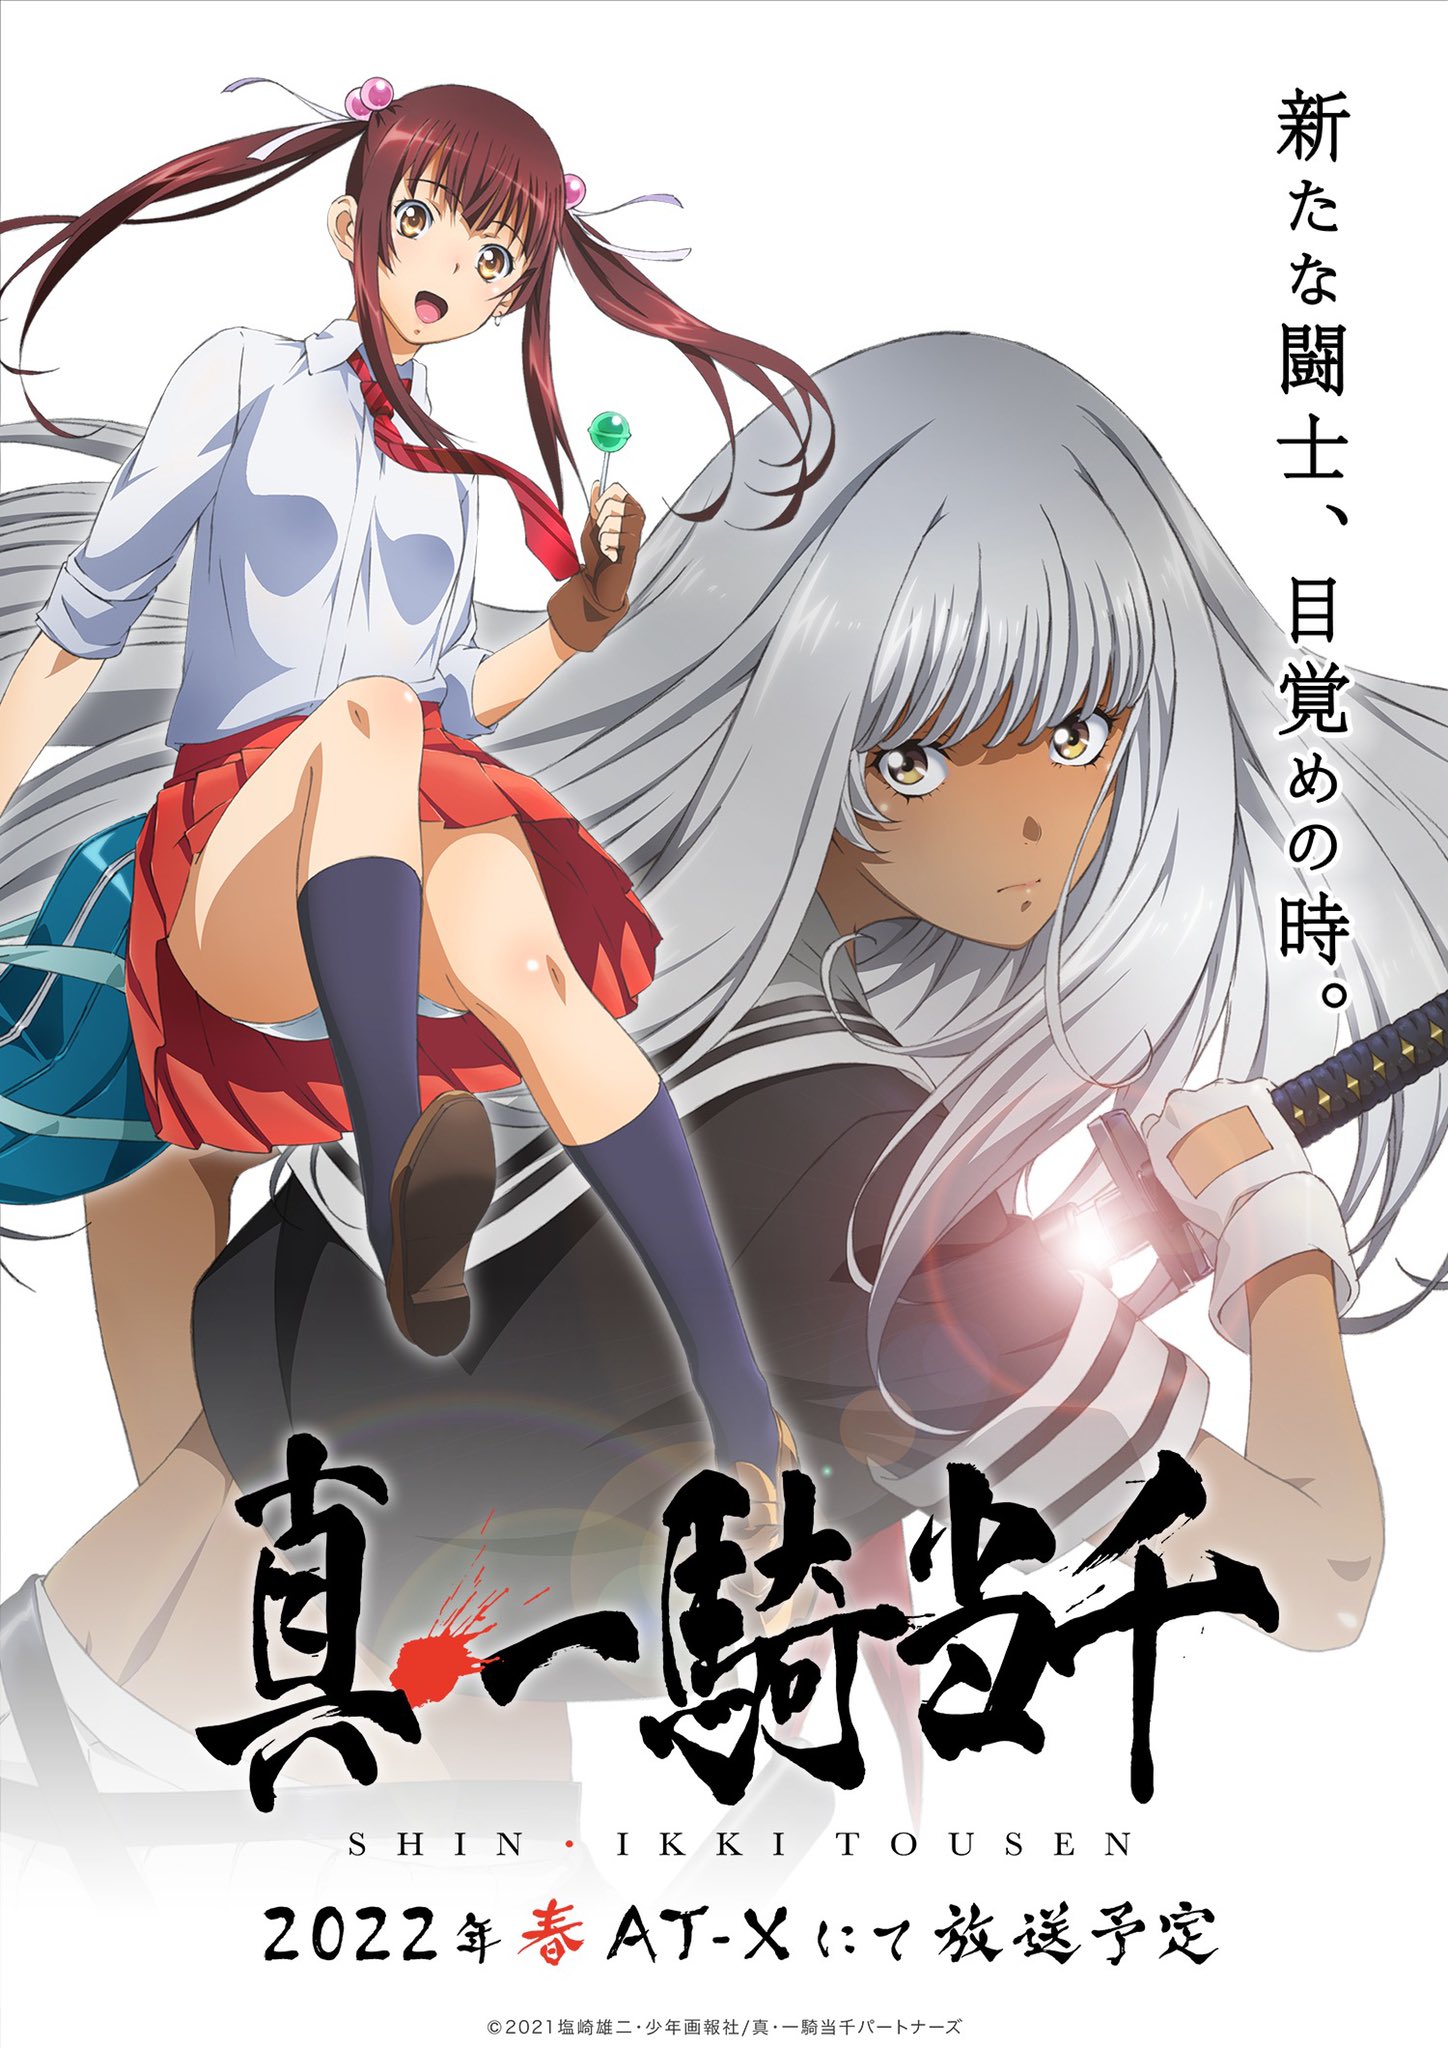 Shin-Ikkitousen-KV Spring 2022 Anime "Shin Ikkitousen" Coming Soon!!